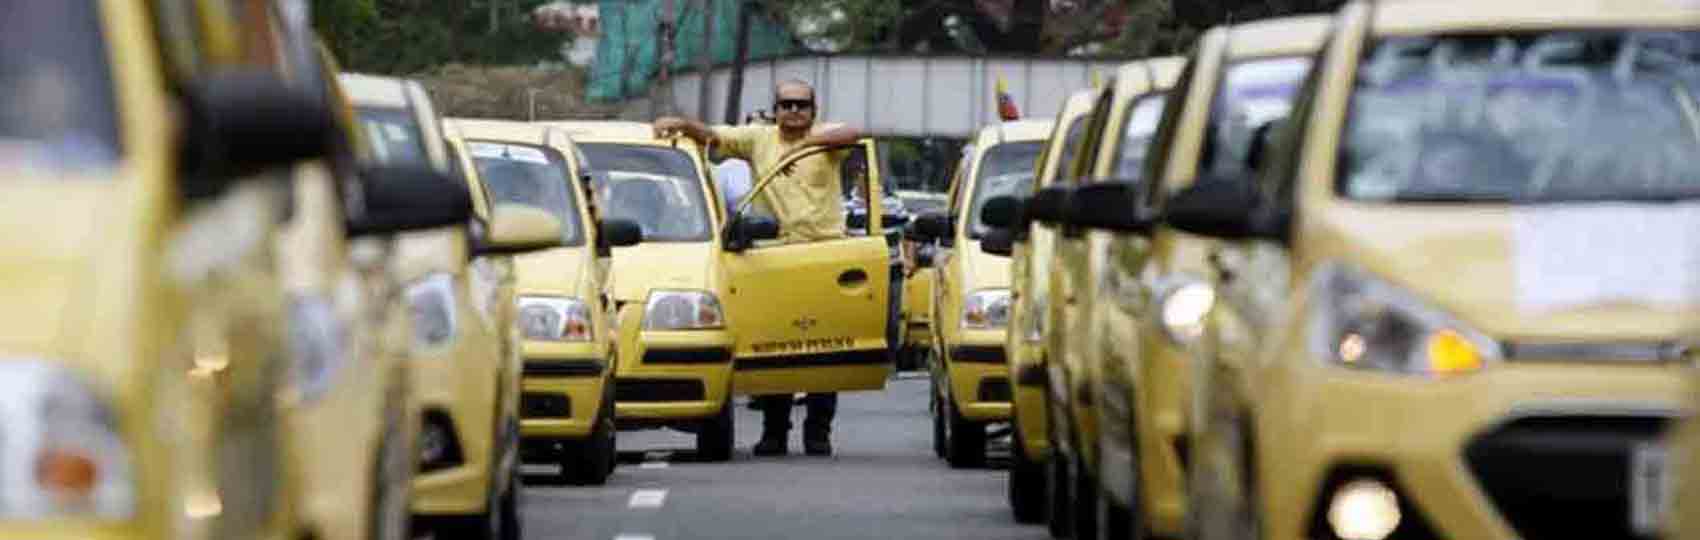 Noticias del sector del taxi y la movilidad en El Salvador.  Mantente informado de todas las noticias del taxi de El Salvador en el grupo de Facebook de Todo Taxi.